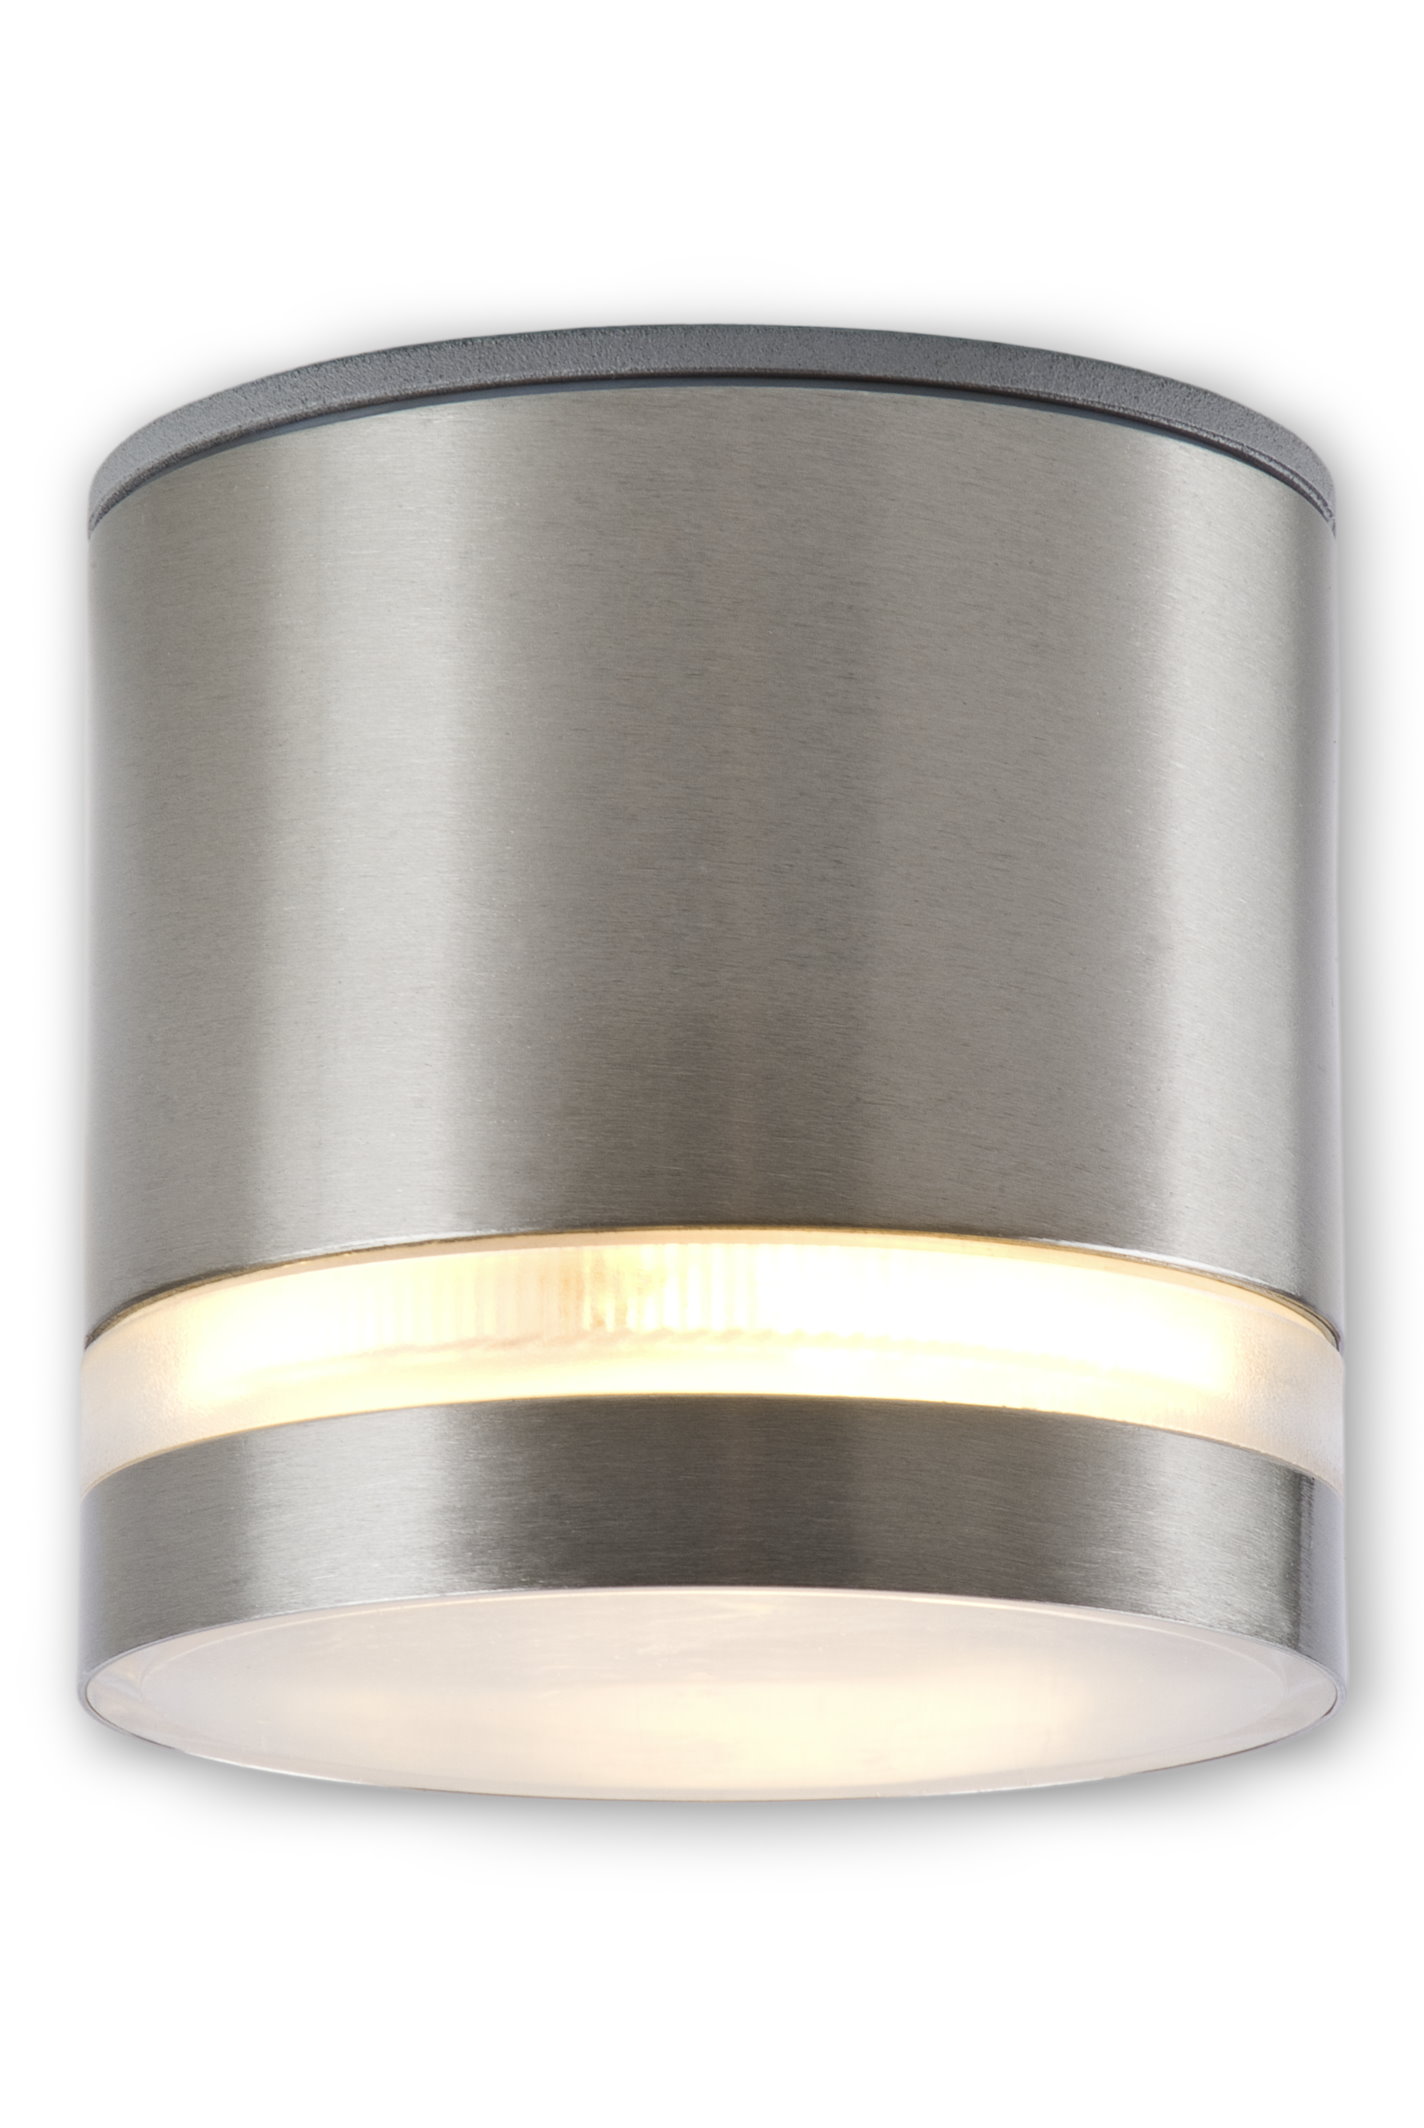 inkl LED Aufbauleuchte IP44 Edelstahl Badleuchte Badlampe 230 V satiniertem GX53 LED Leuchtmittel 8,5 Watt warmweiss 